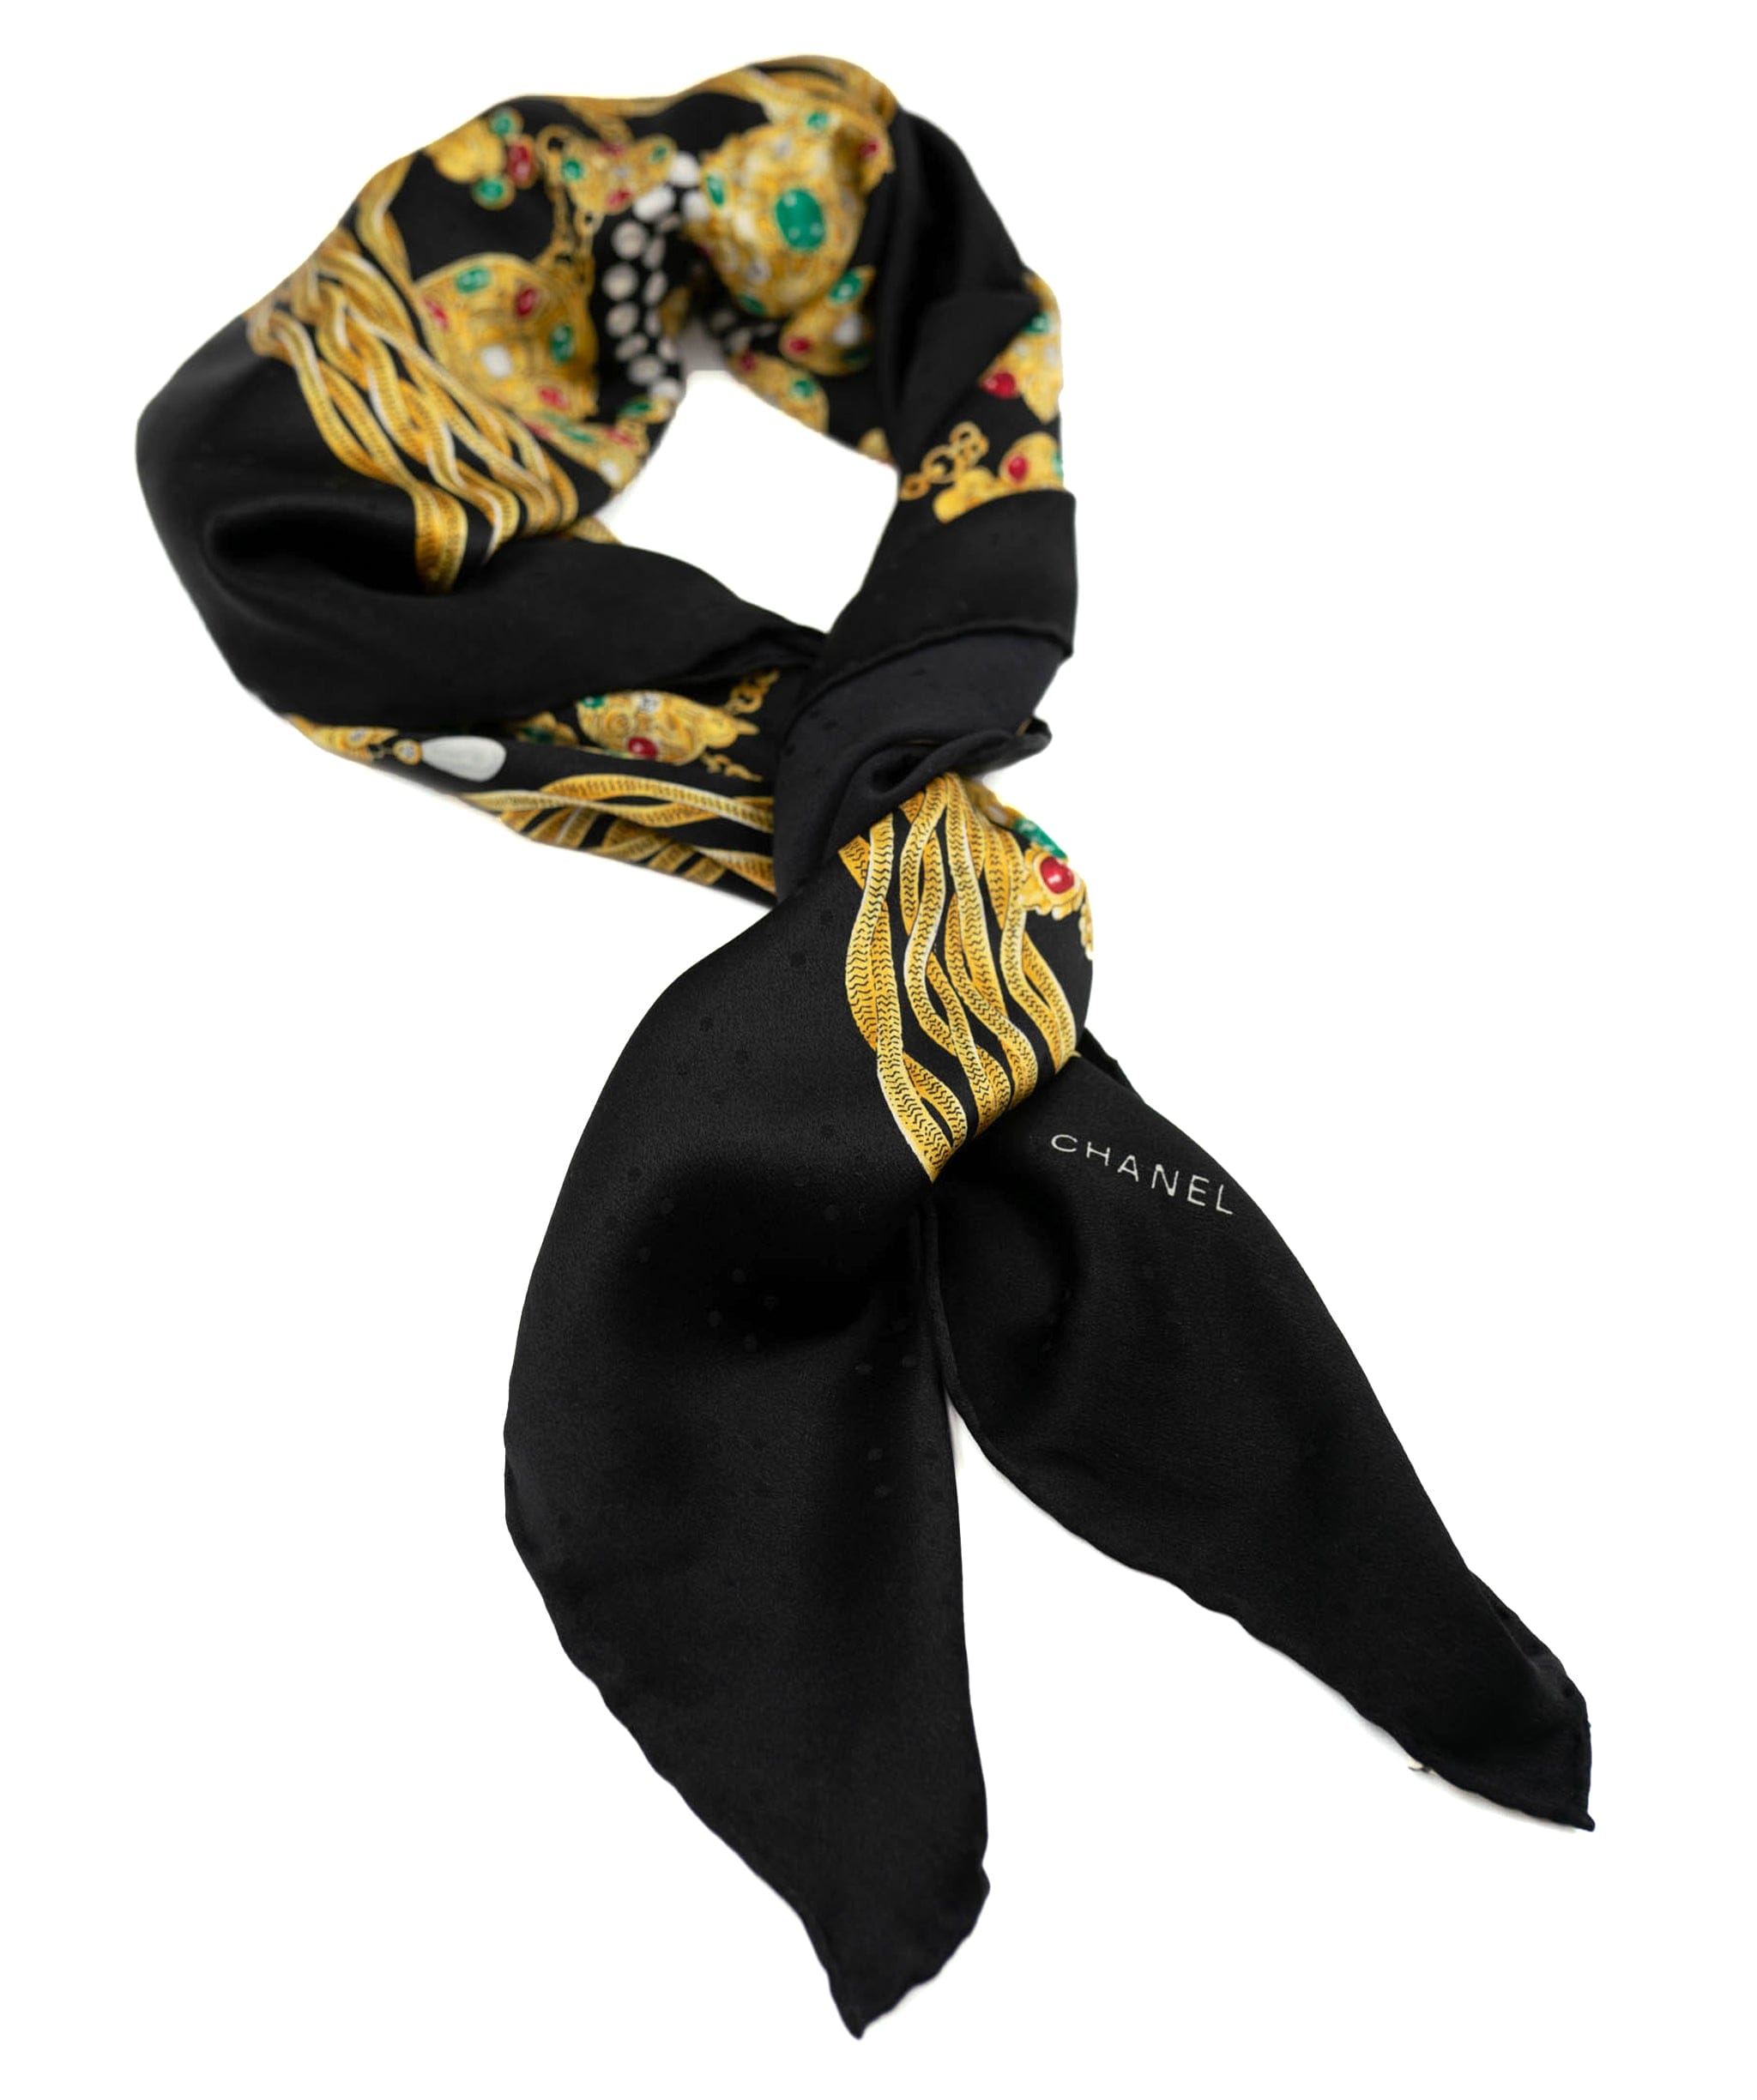 Chanel Chanel black gripoix printed silk scarf - AWL3891